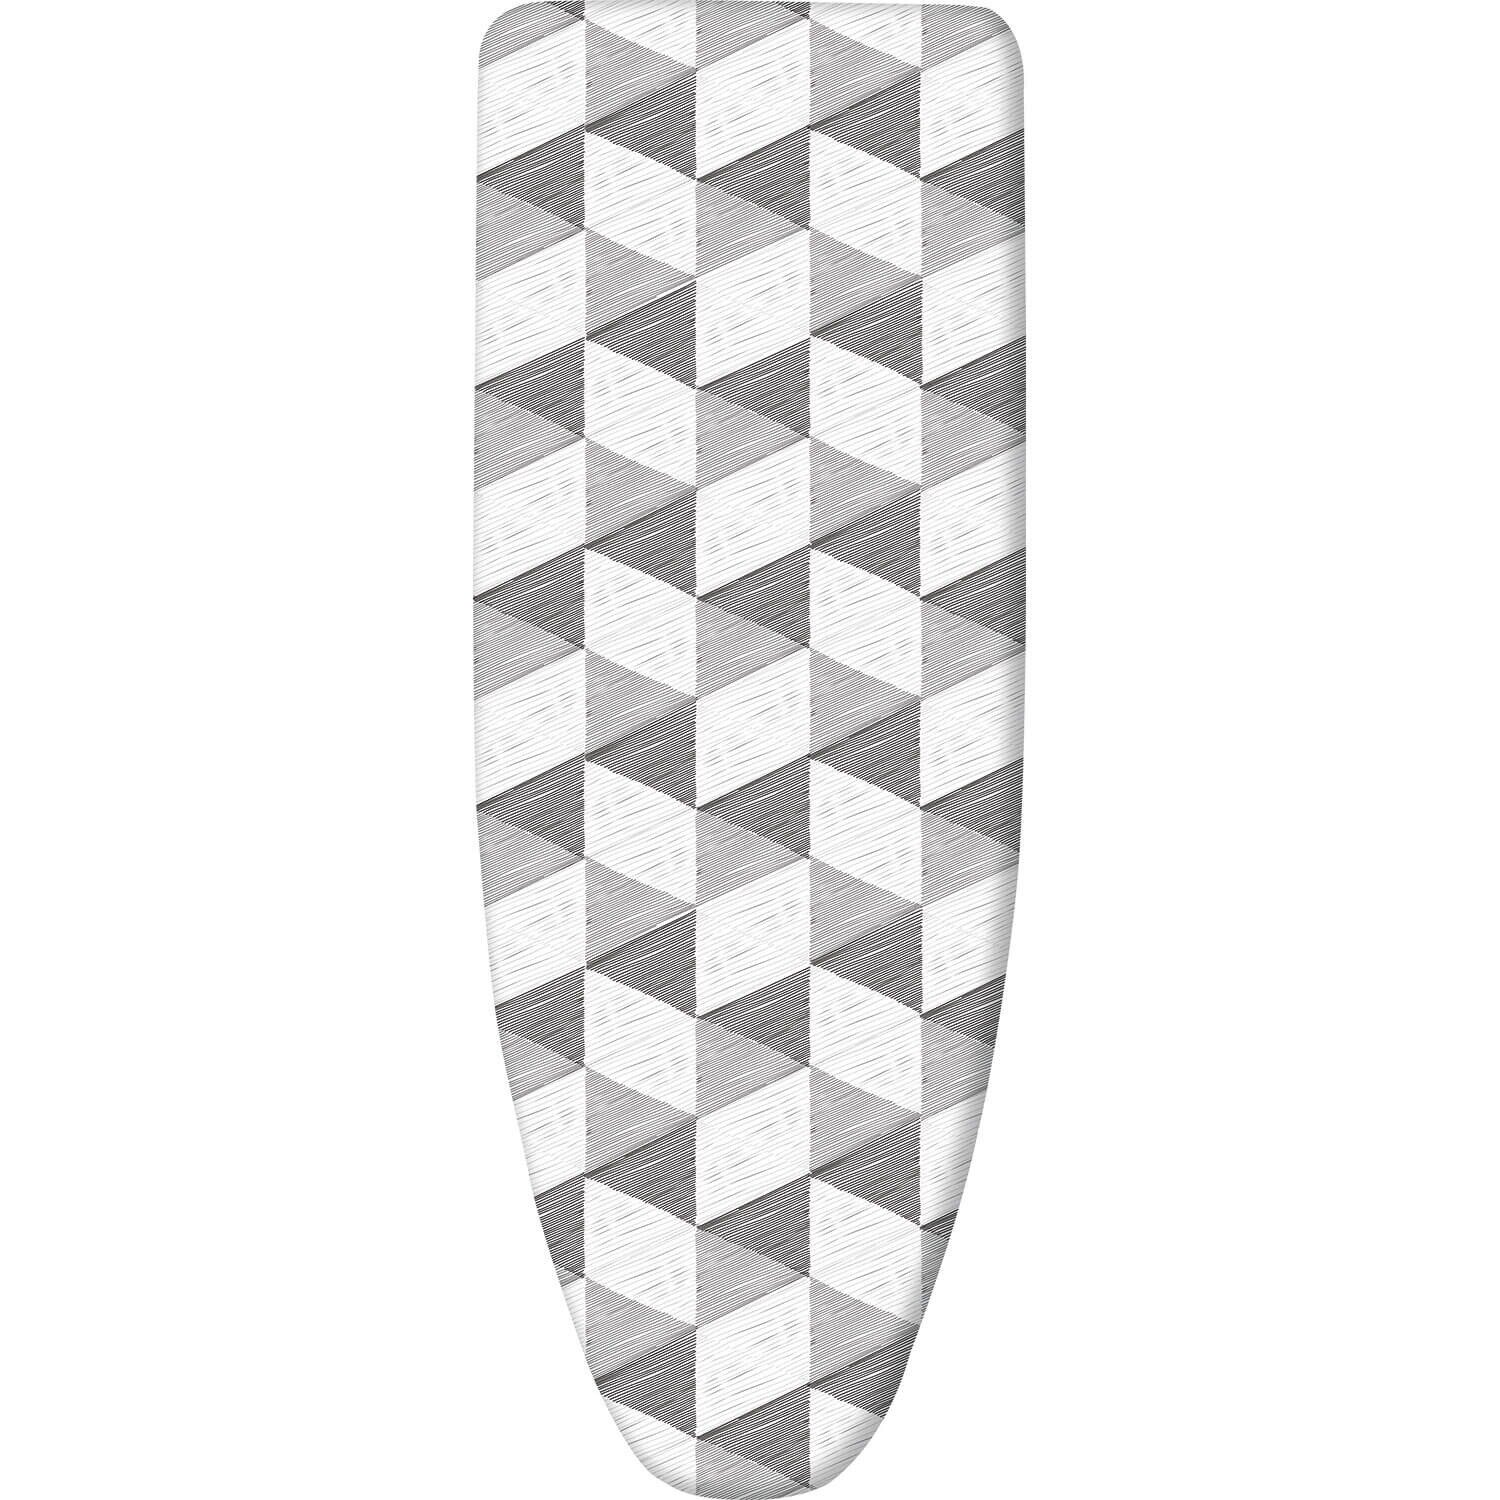 Чехол универсальный дублированный с поролоном Nika ЧПД1/1 серый со штрихами